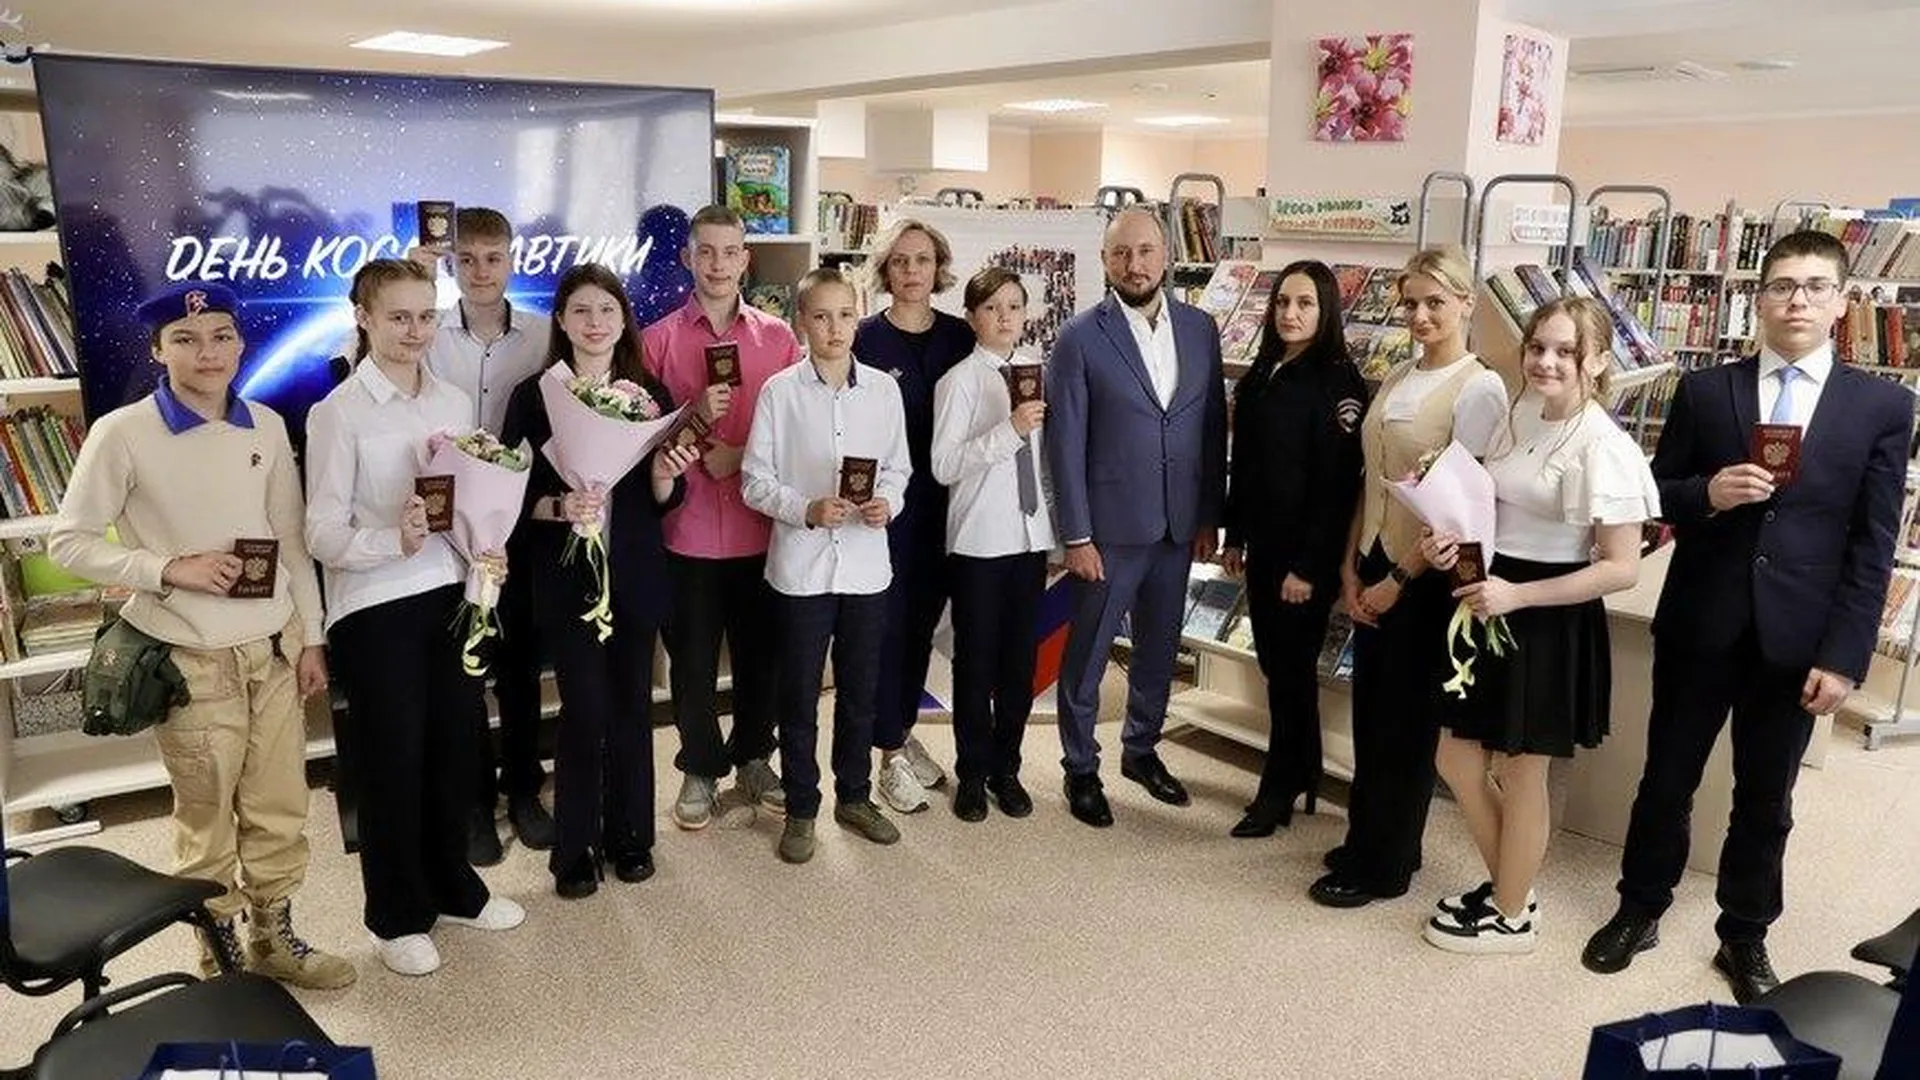 Юные жители Солнечногорска получили паспорта граждан РФ в День космонавтики